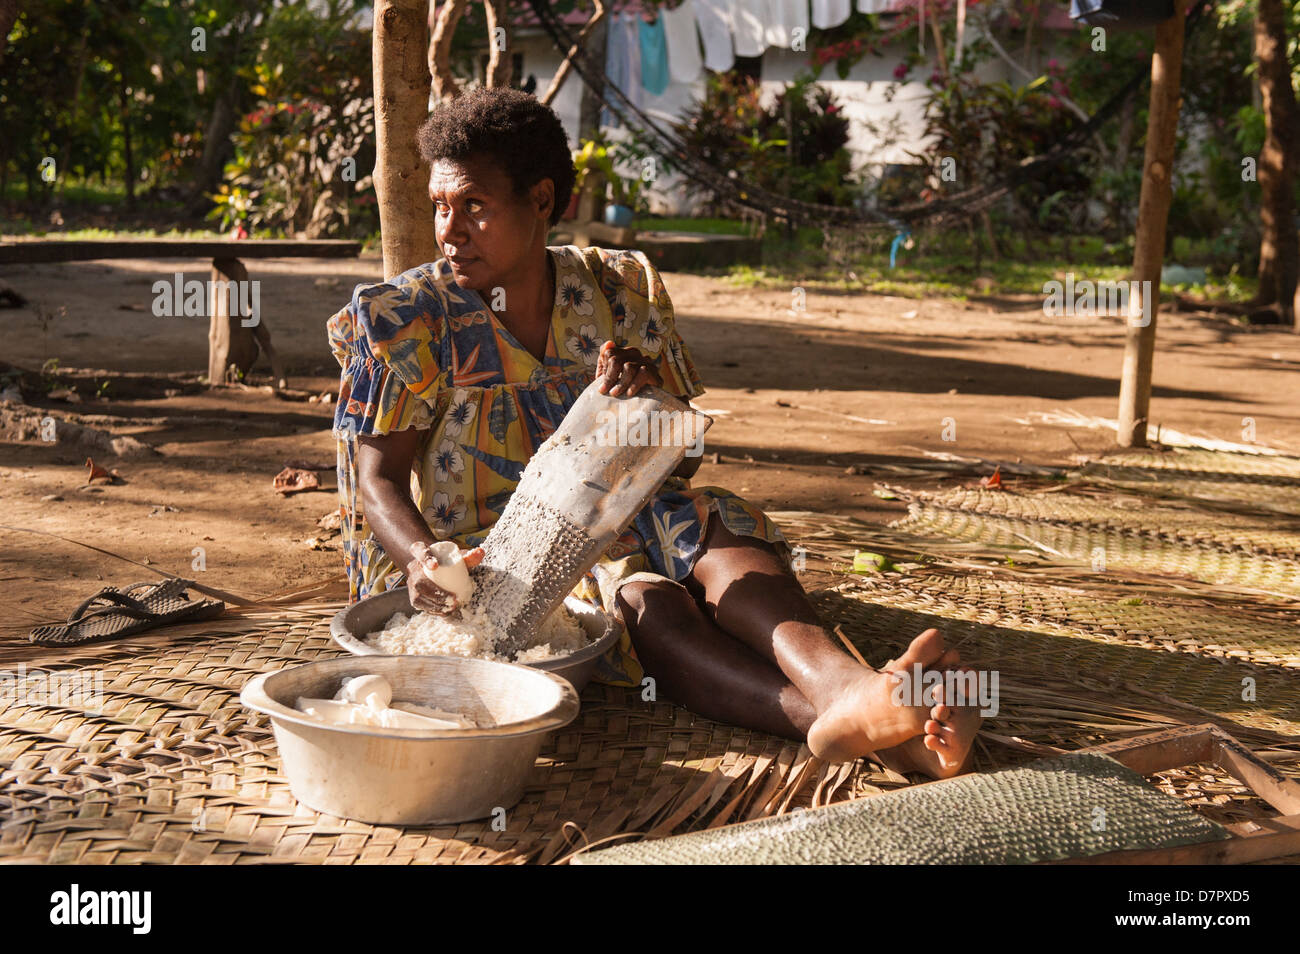 Vida de pueblo tradicional con una mujer sentada en la alfombrilla rallar mandioca. Bahía de Banam Malekula, Vanuatu. Foto de stock